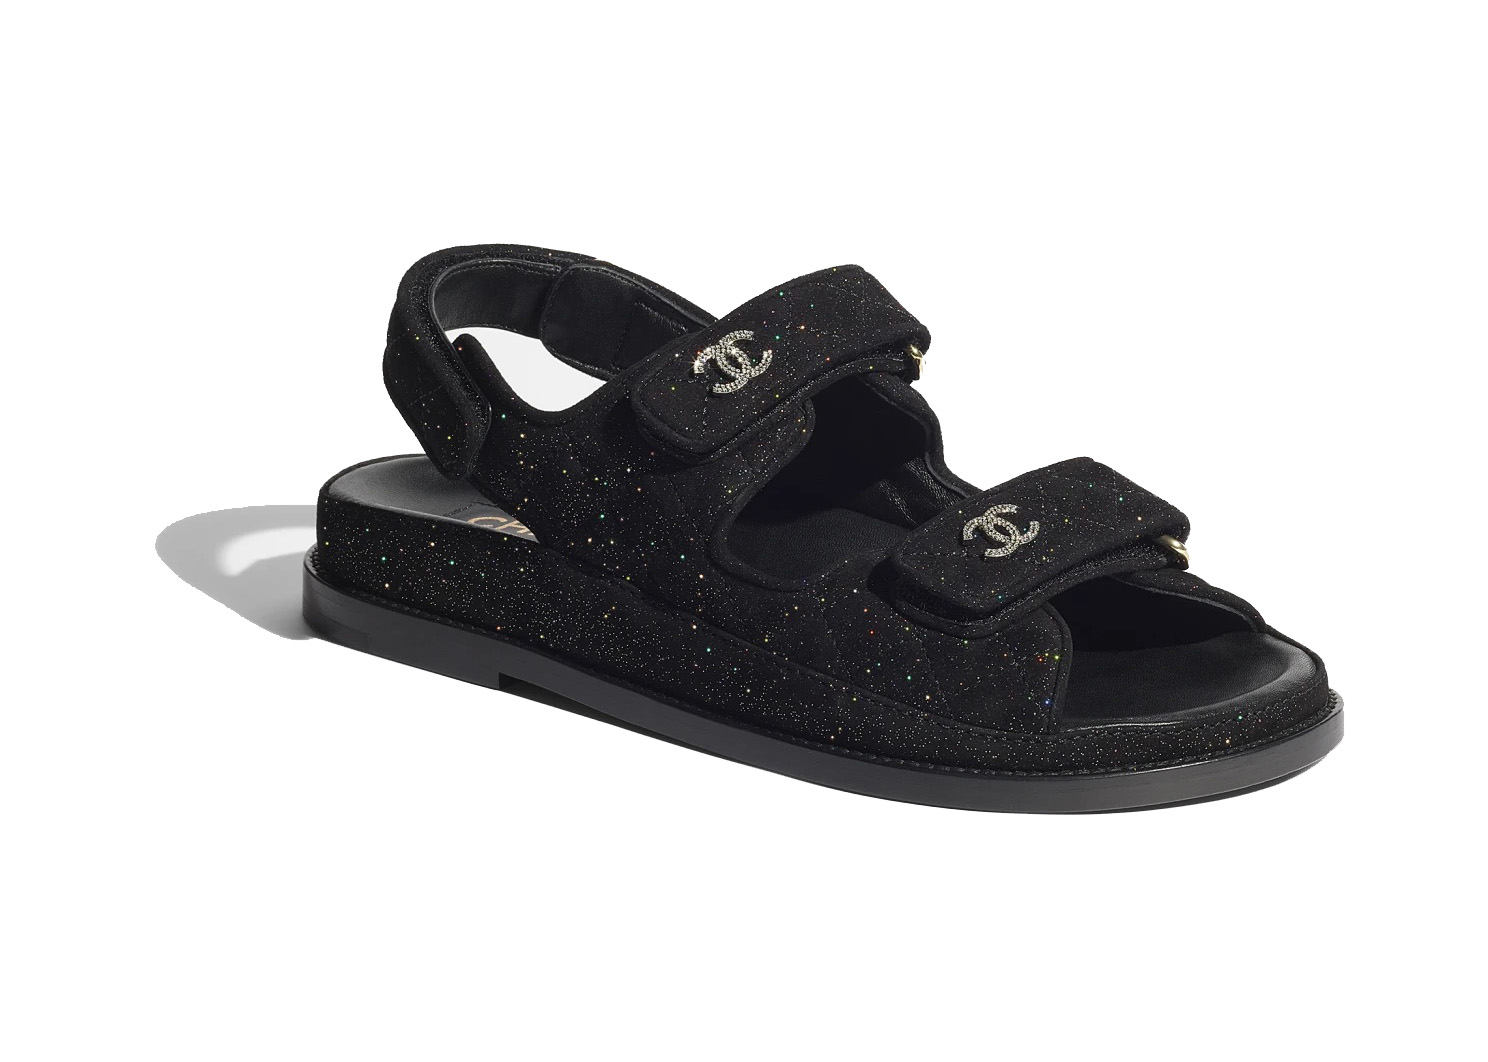 Chanel Sparkle Sandal Black Silver Suede Kidskin - G35927 X56896